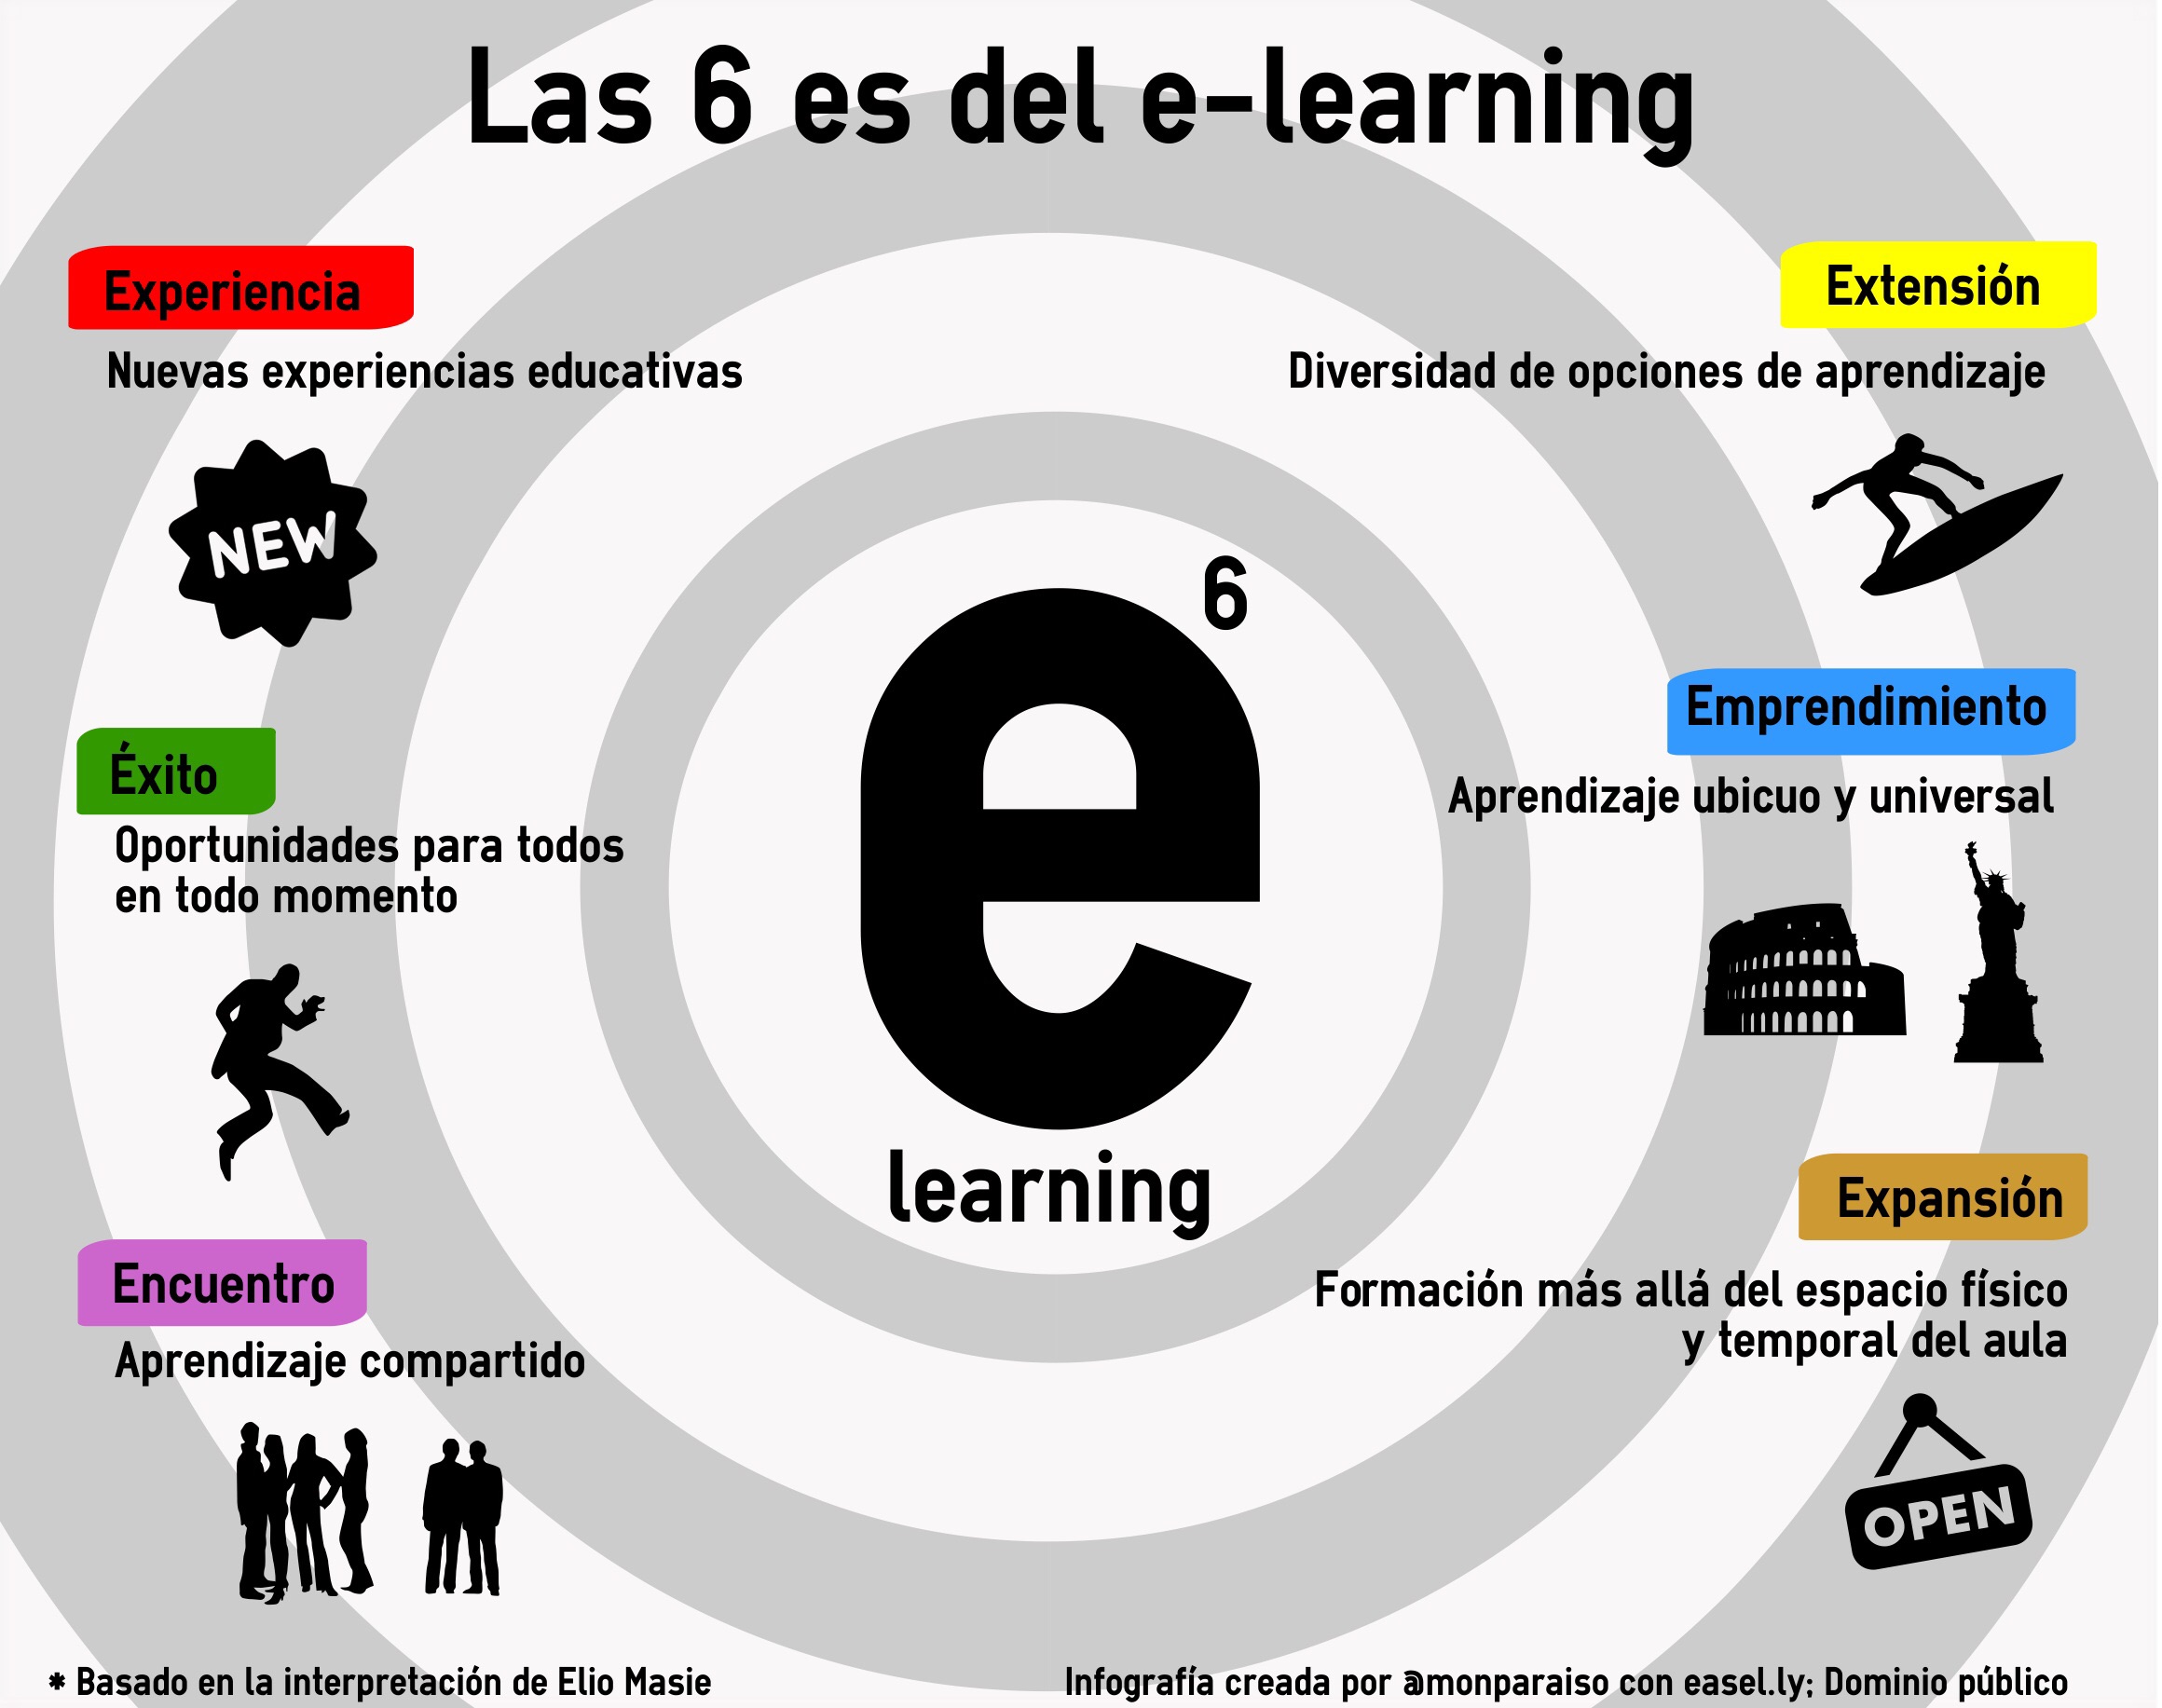 Las 6 es del e-learning